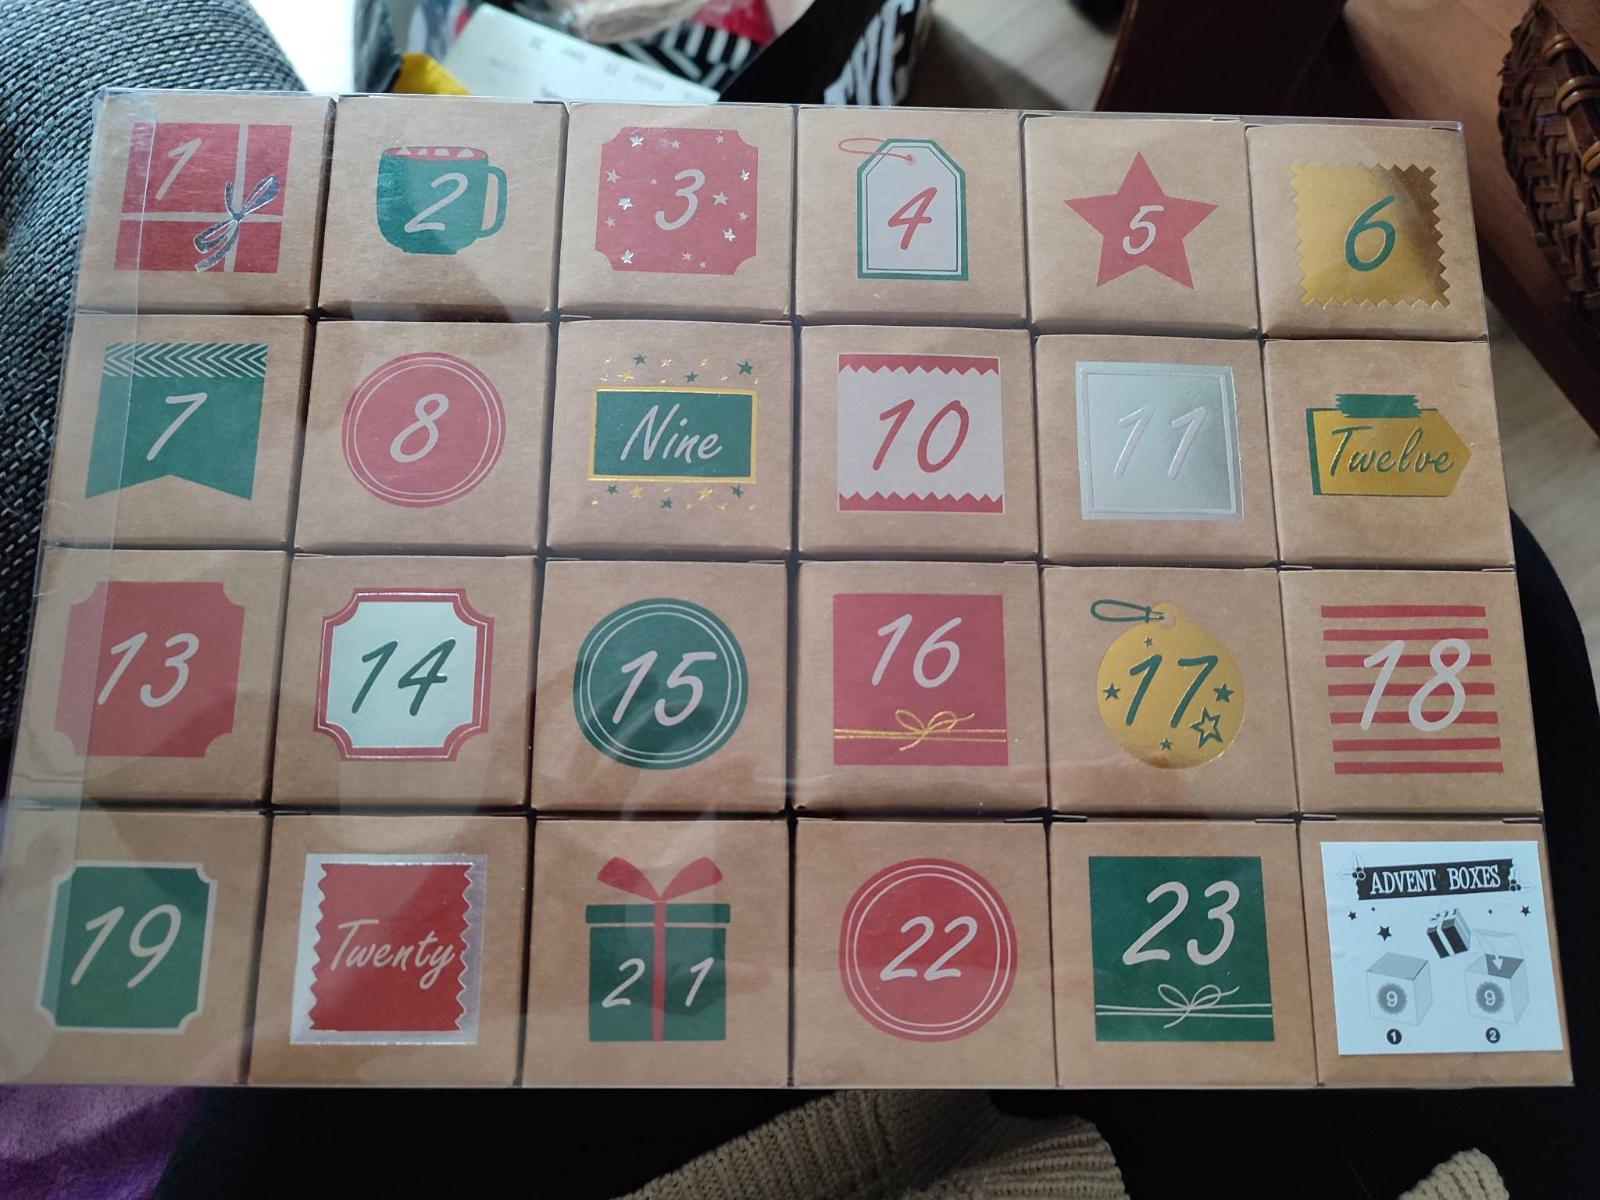 Adventný kalendár - box - undefined